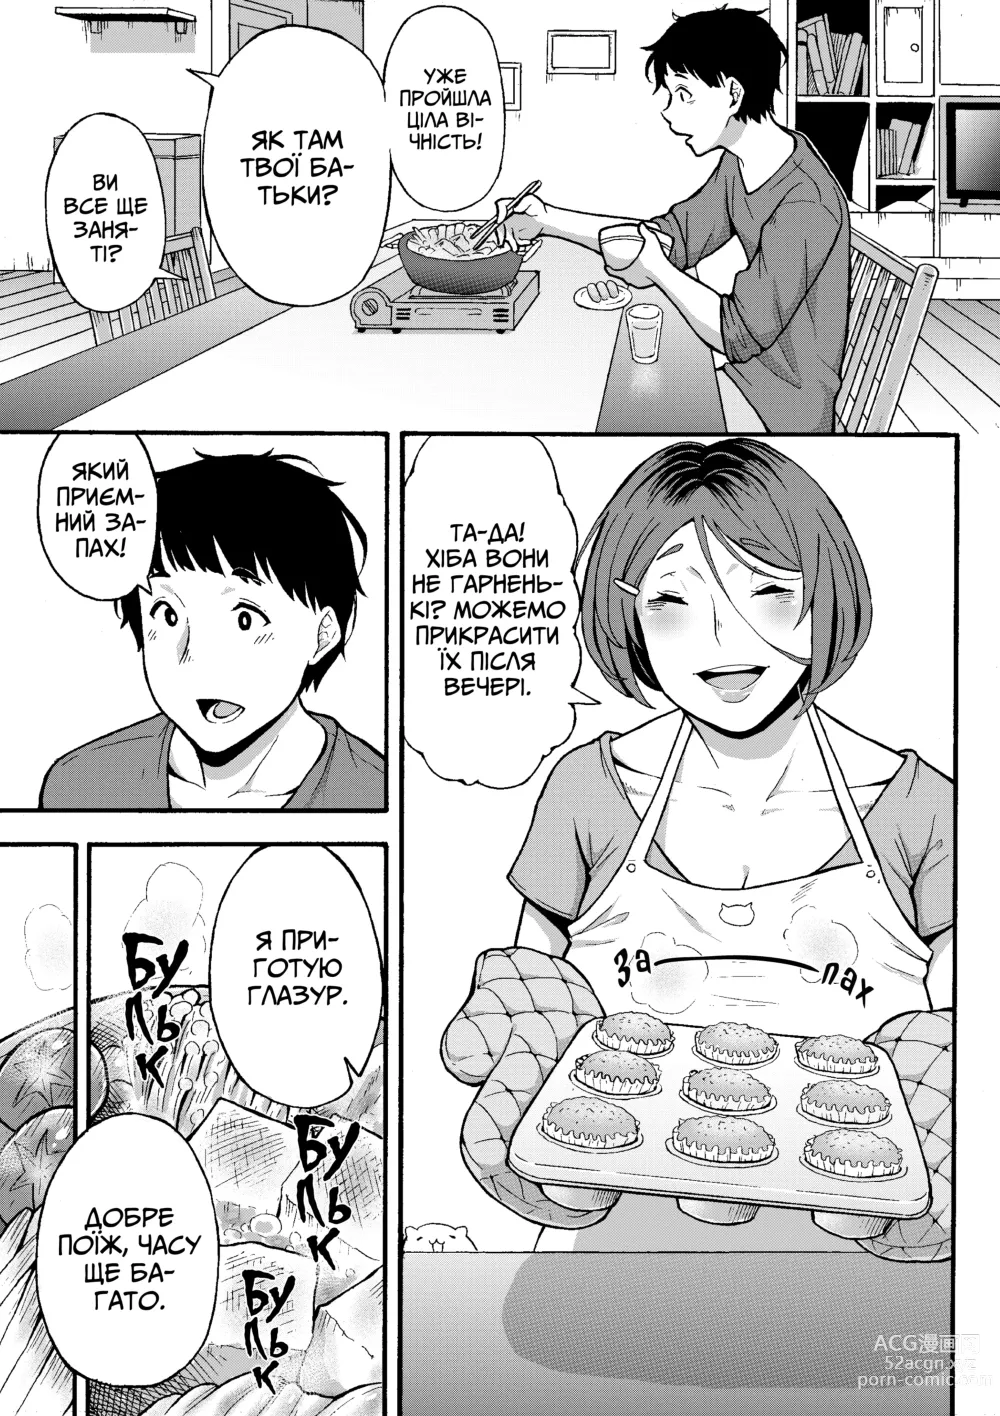 Page 4 of doujinshi Хочеш зробити щось приємне з тітонькою?